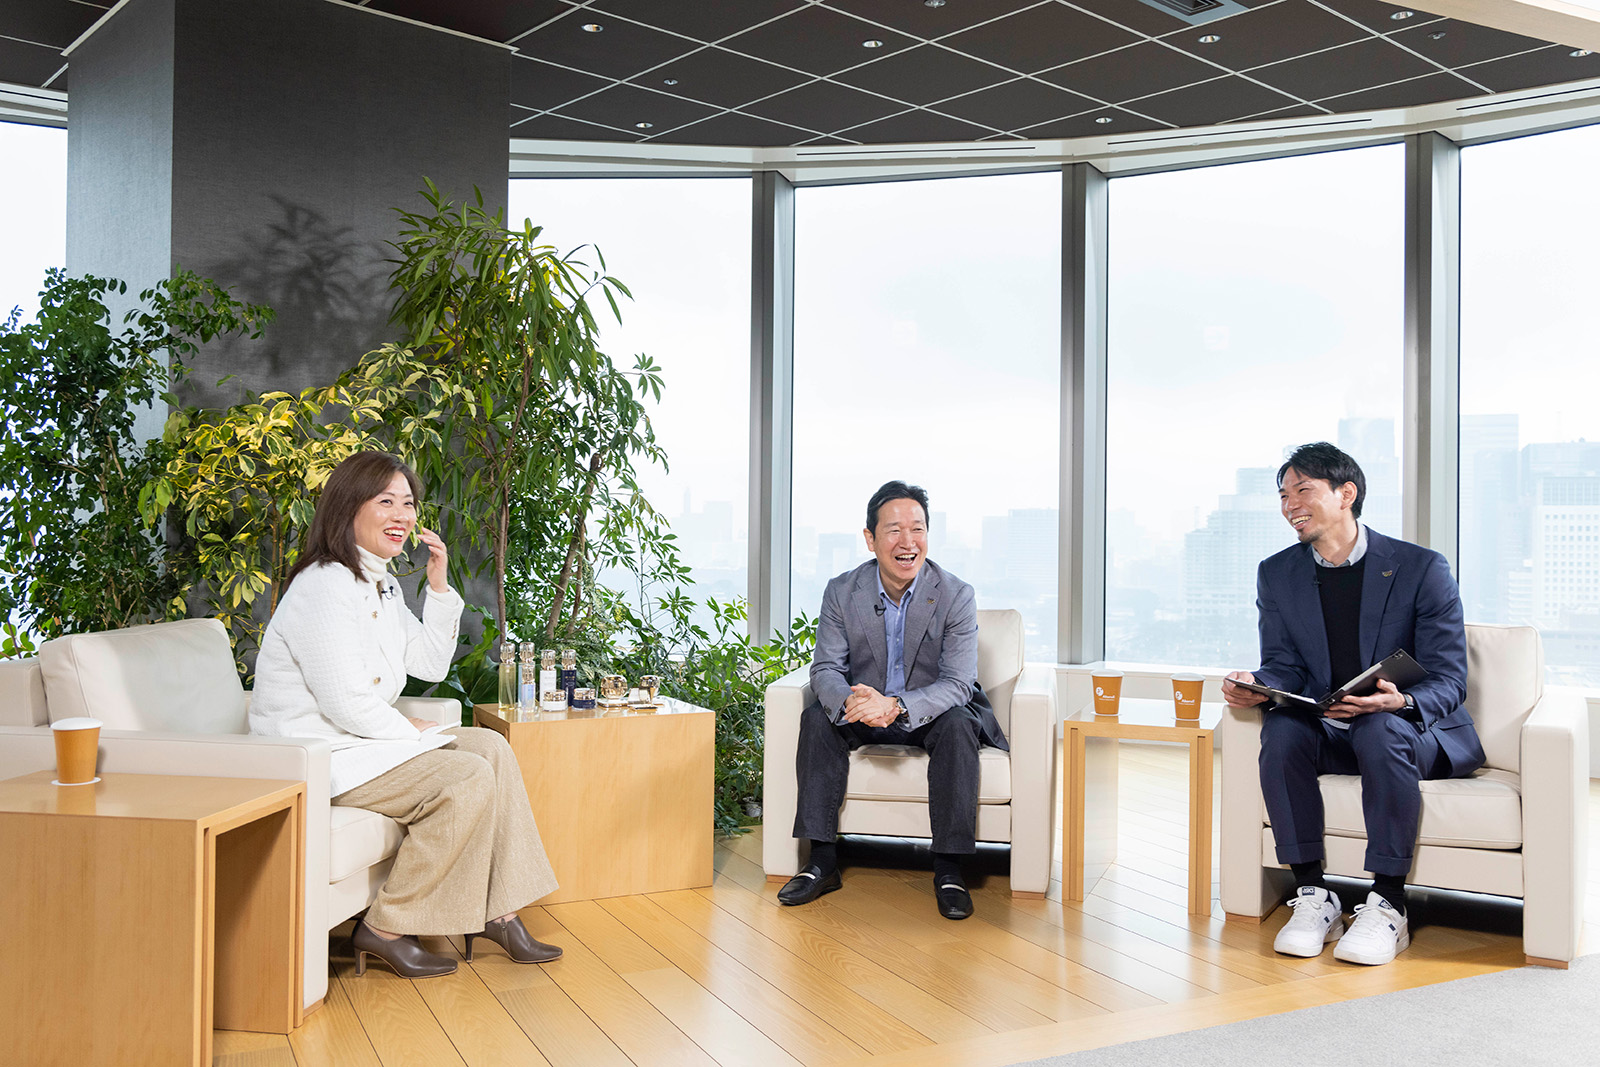 Photo (from left to right): Ms. Mizuki Hashimoto, Yoshihiro Morii, Tatsuya Fukuzawa